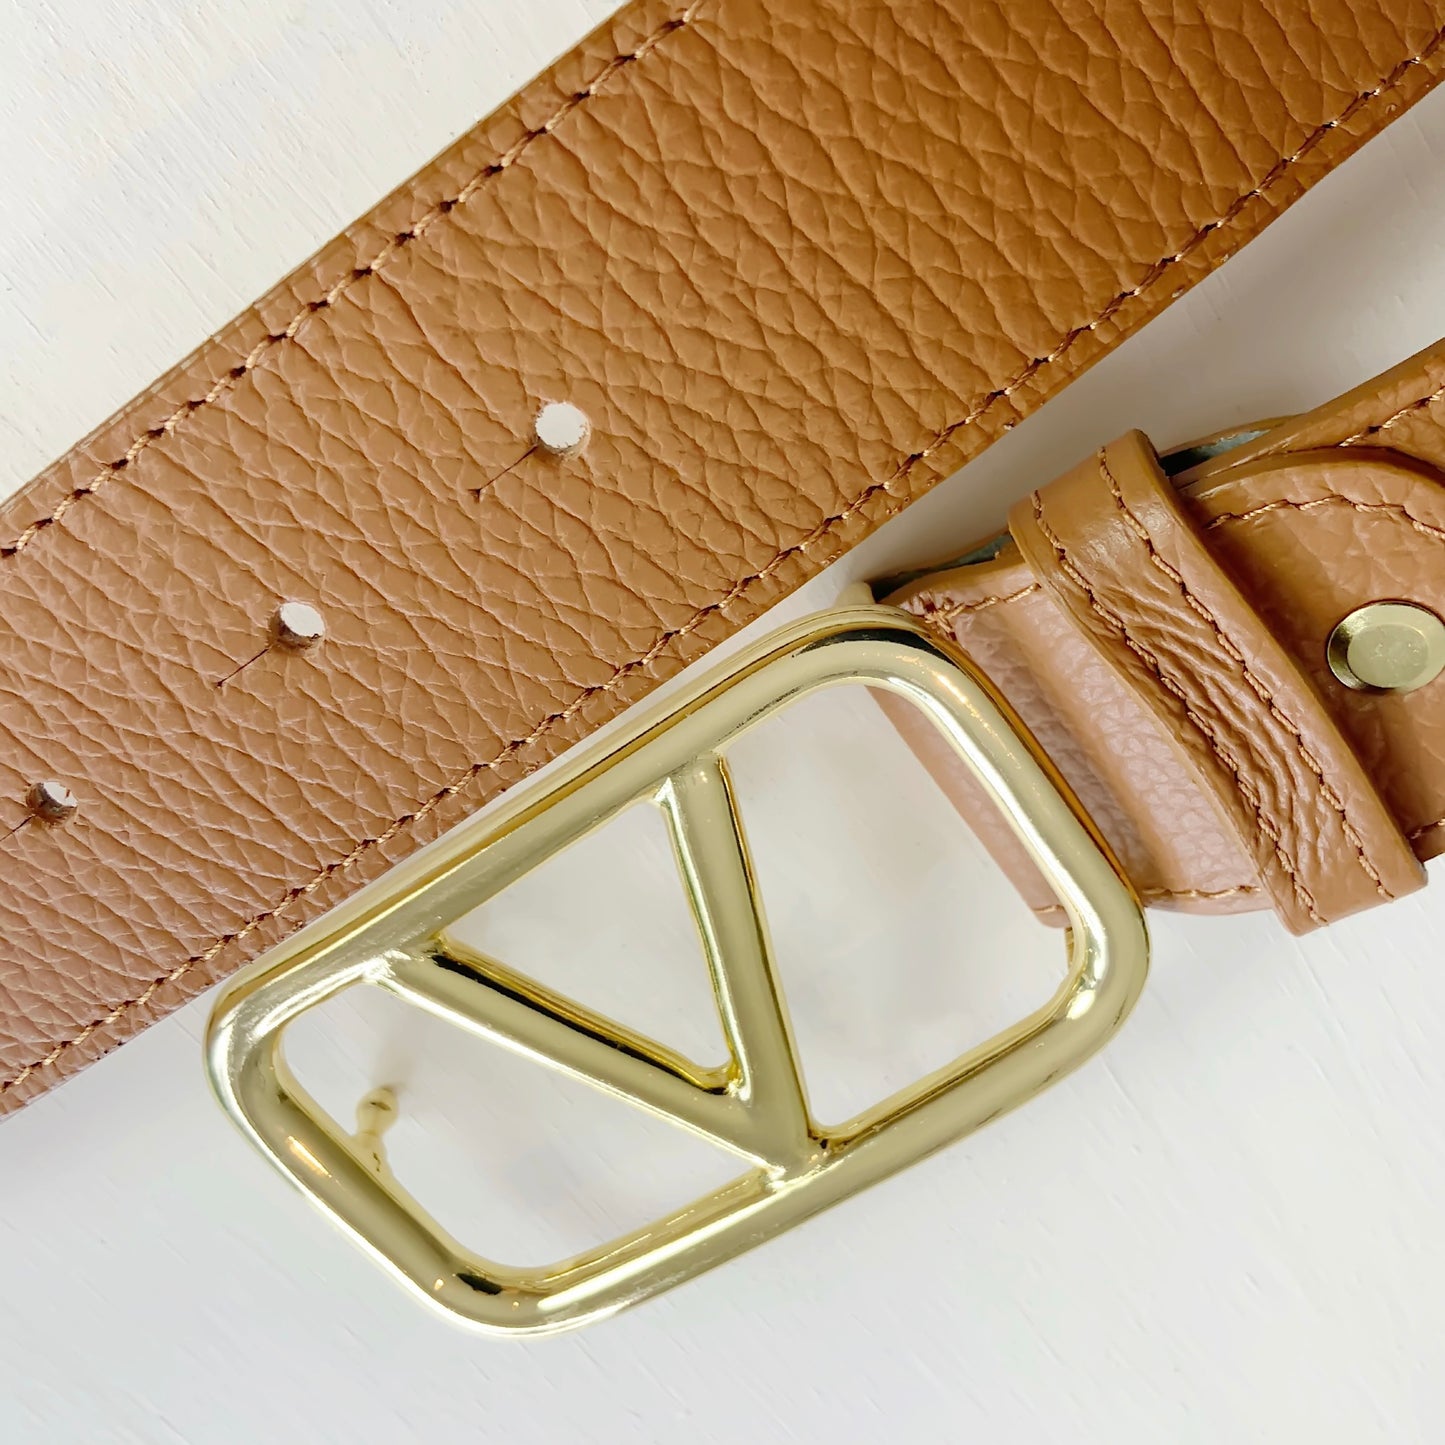 V-Buckle Leather Belt